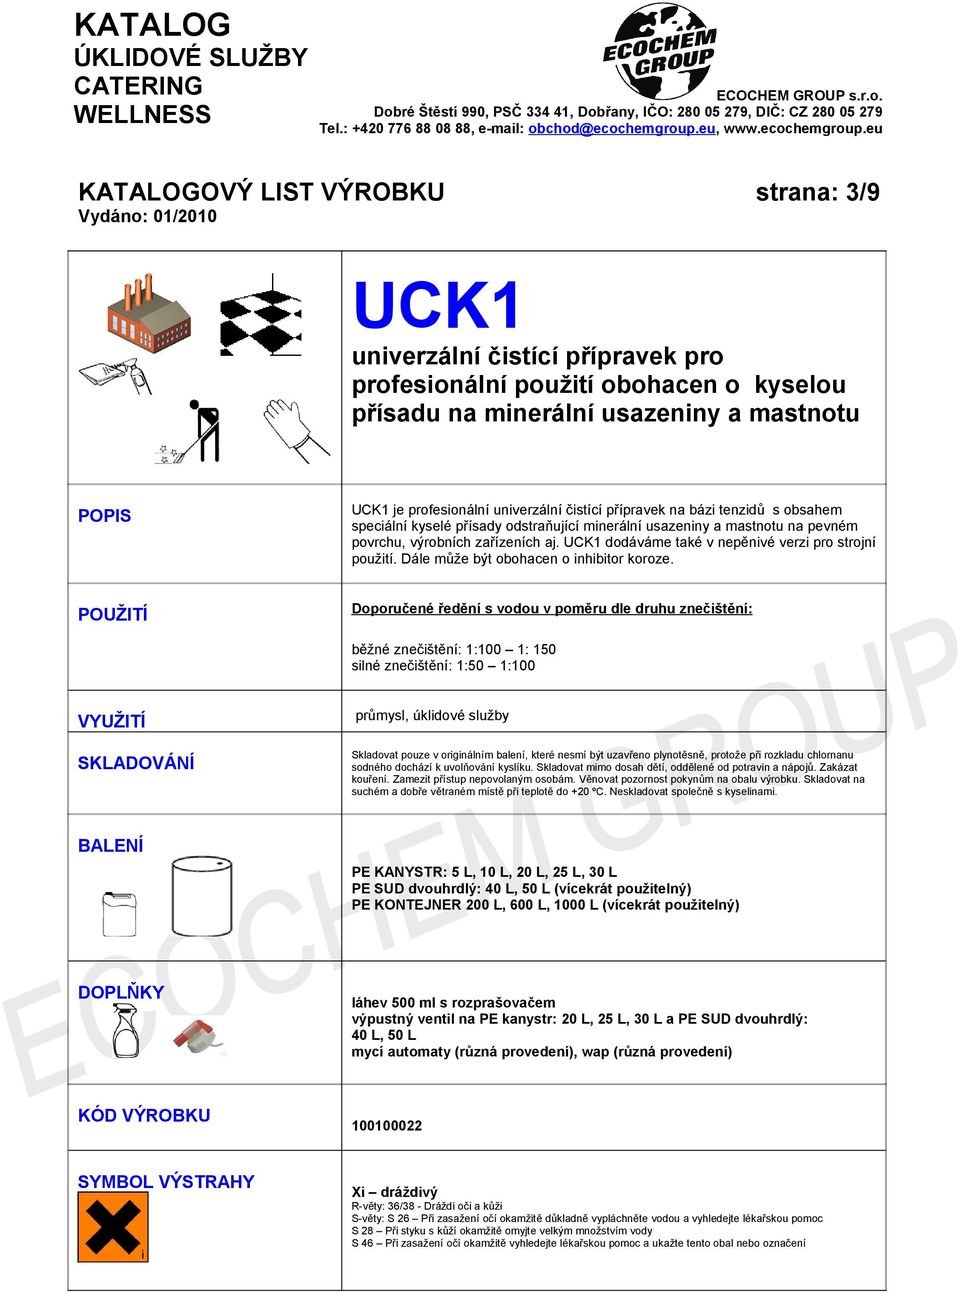 UCK1 dodáváme také v nepěnivé verzi pro strojní použití. Dále může být obohacen o inhibitor koroze.